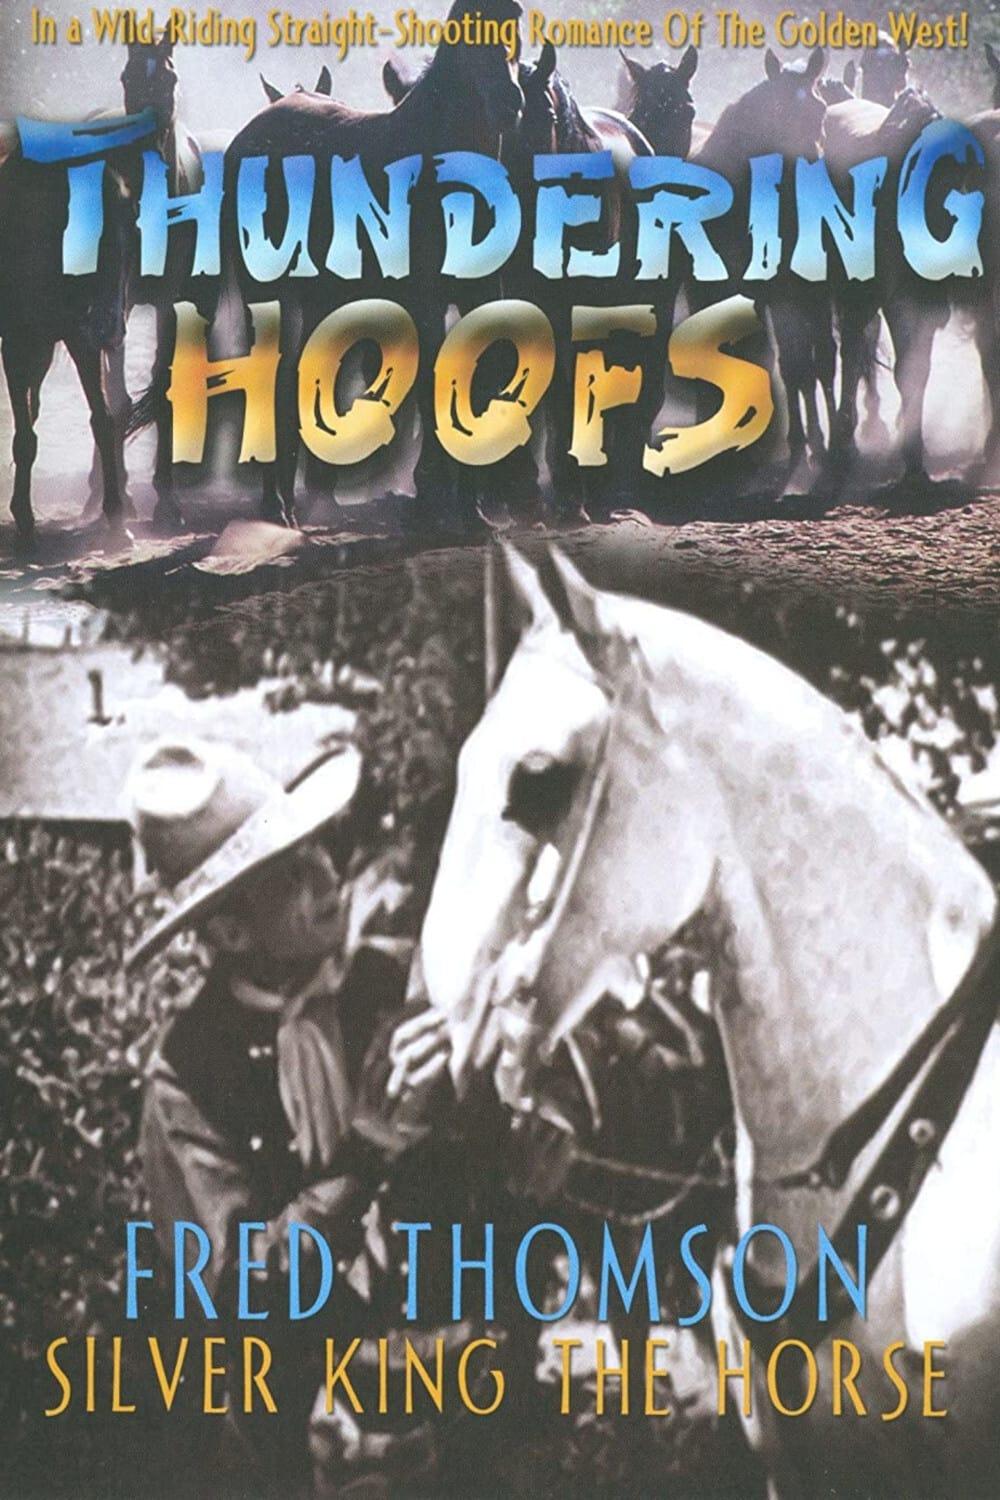 Thundering Hoofs poster